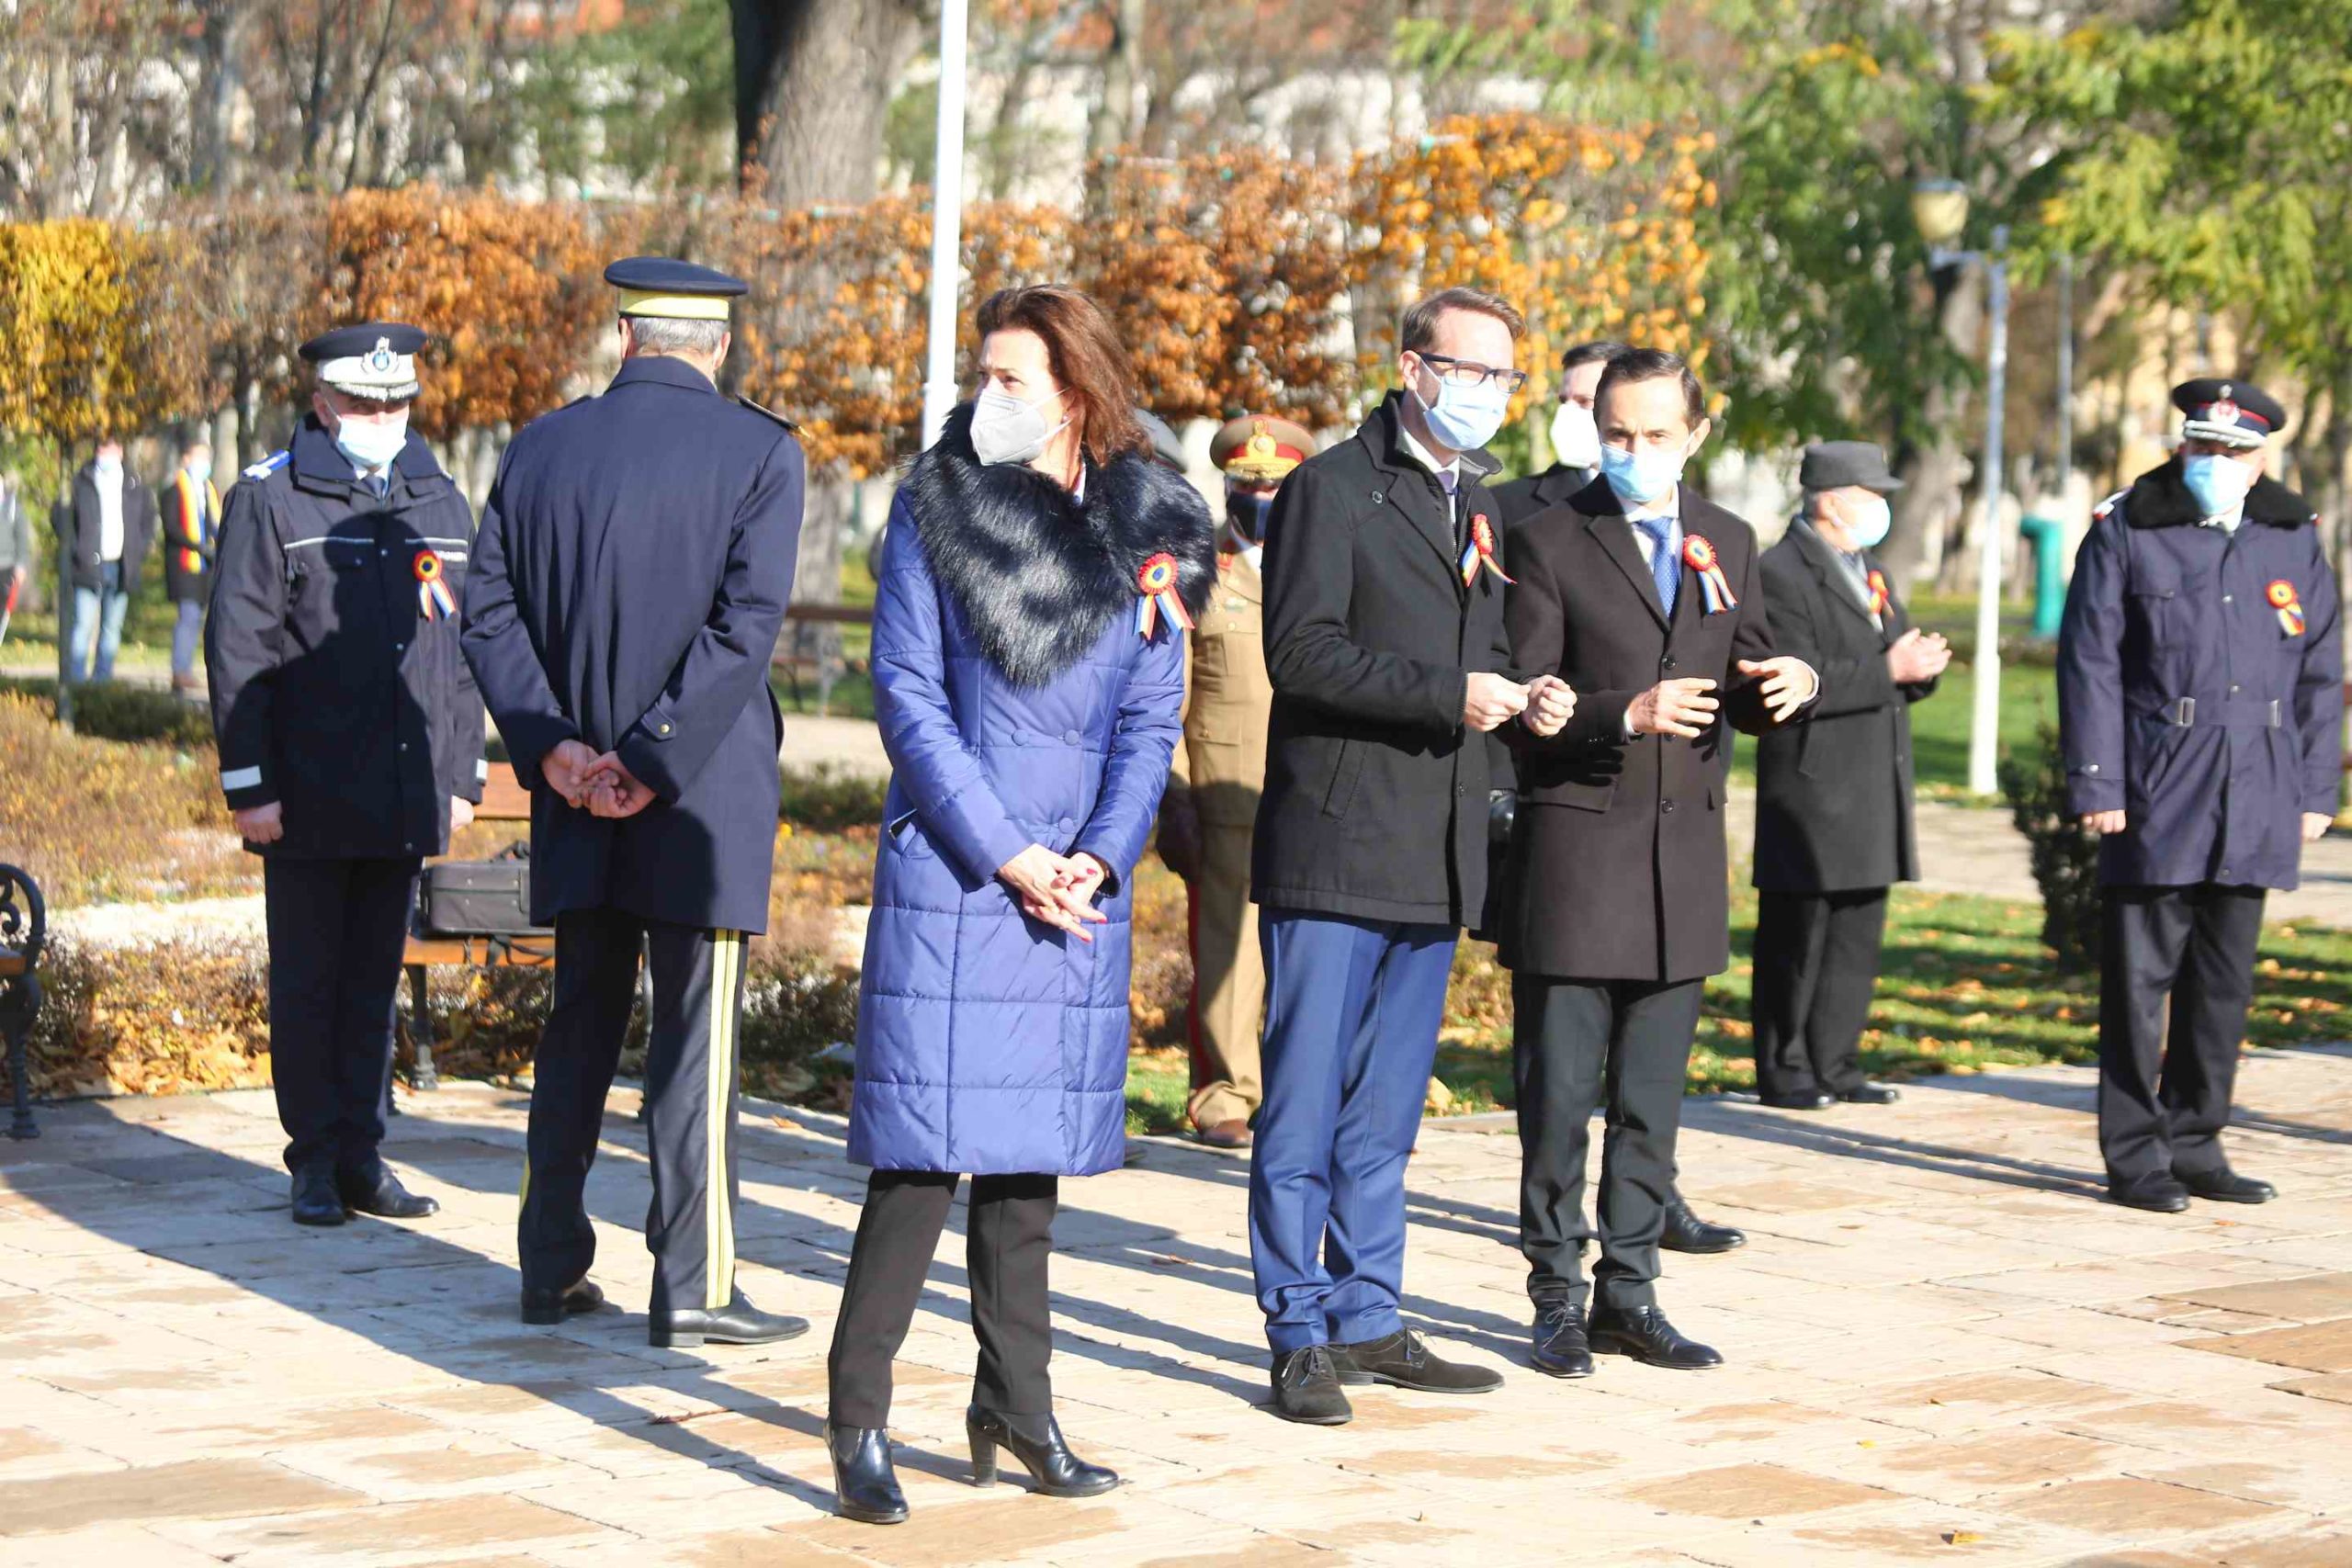 ceremonie 1 decembrie armata (18)